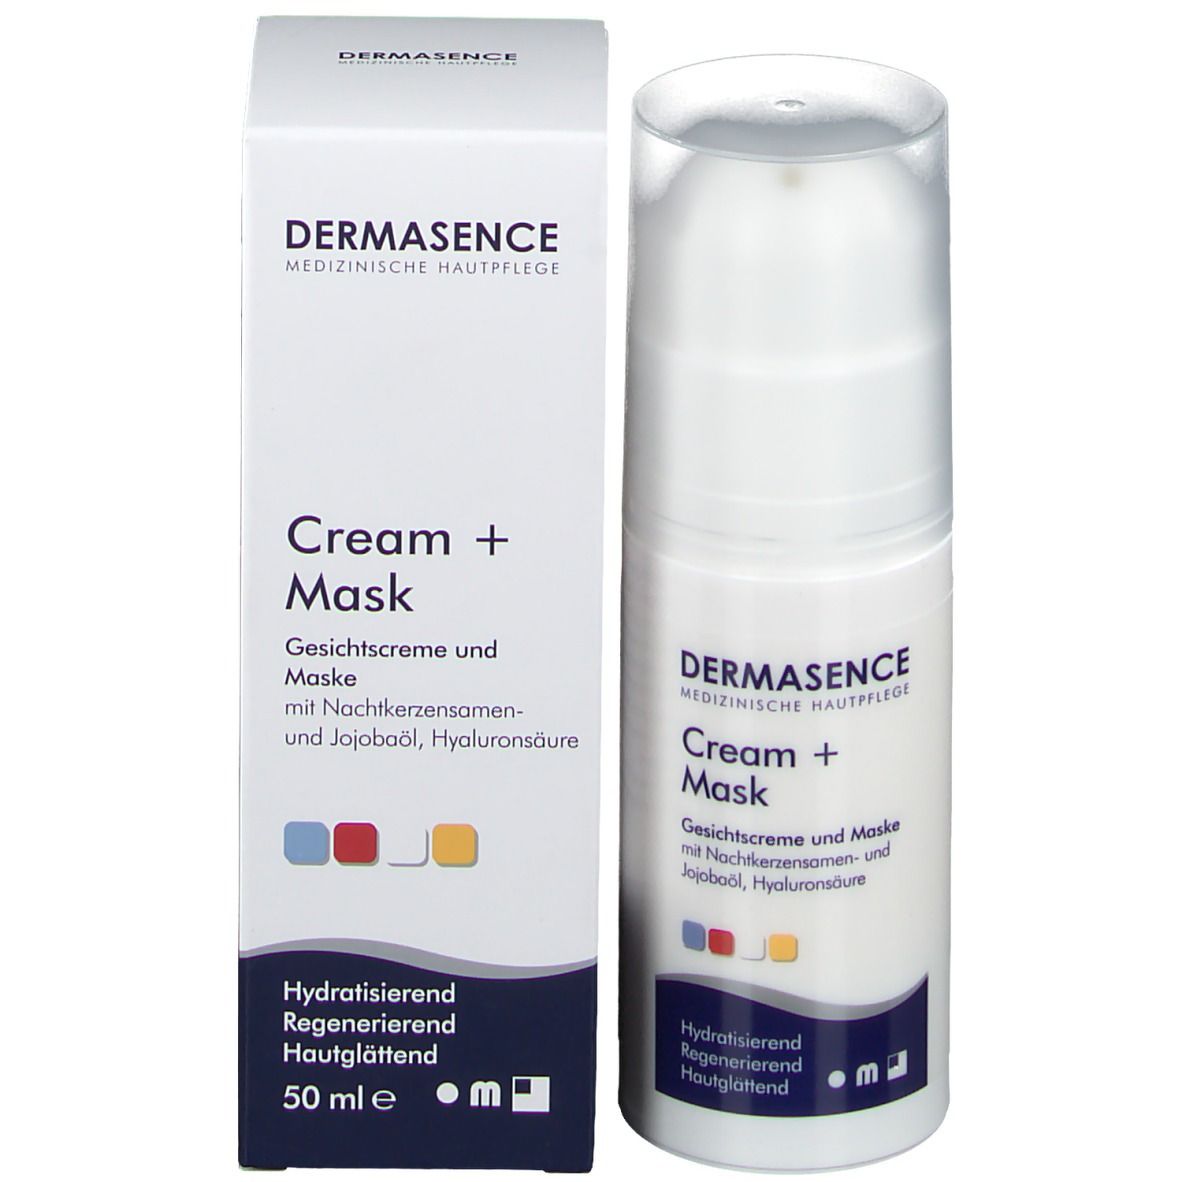 DERMASENCE cream + mask